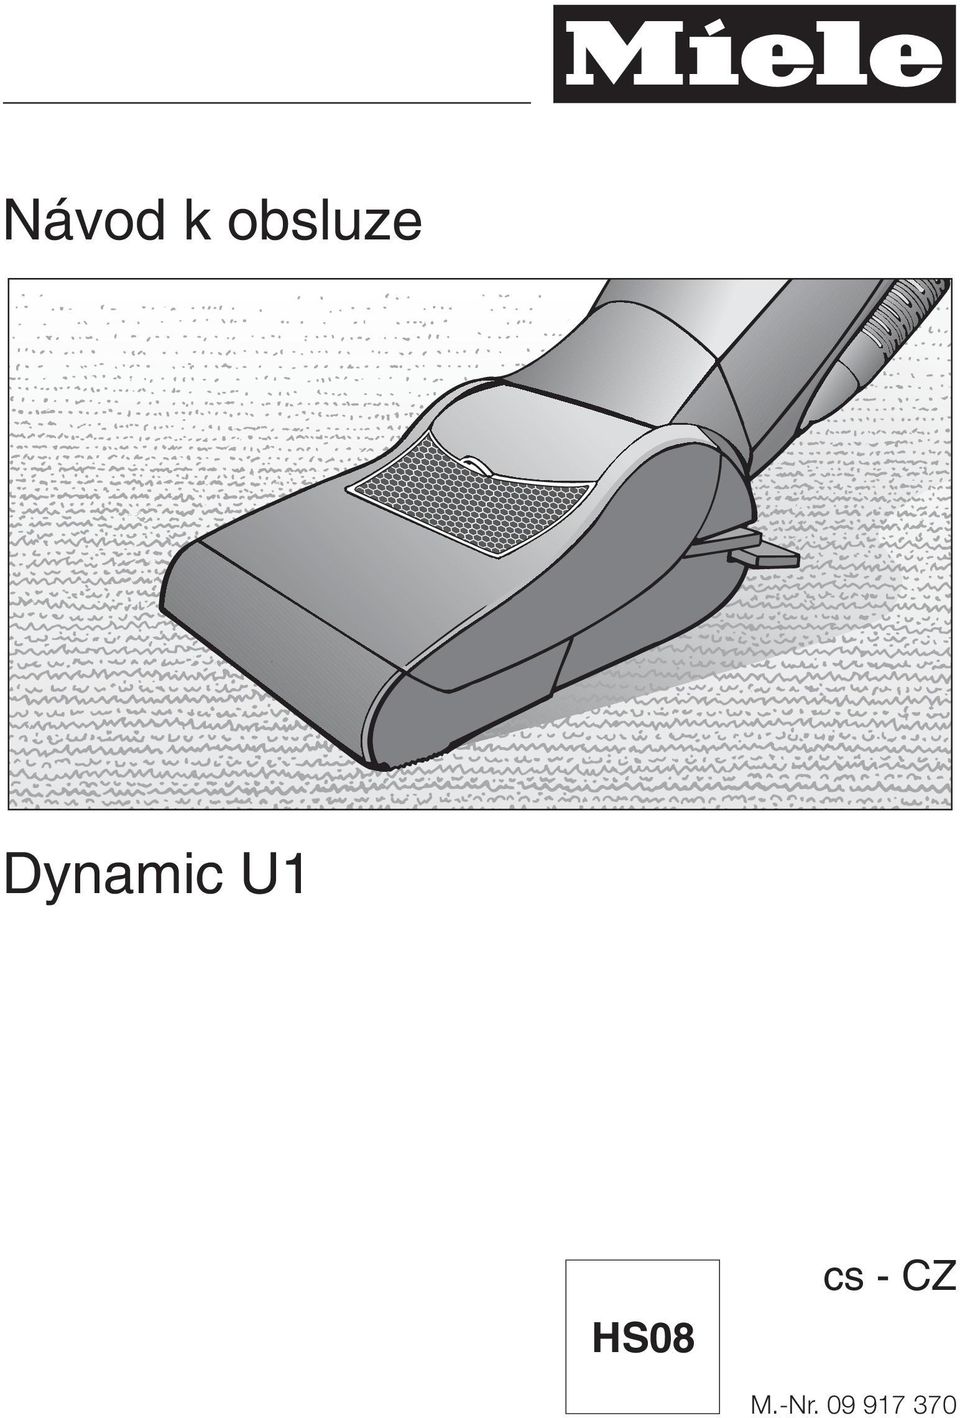 Dynamic U1